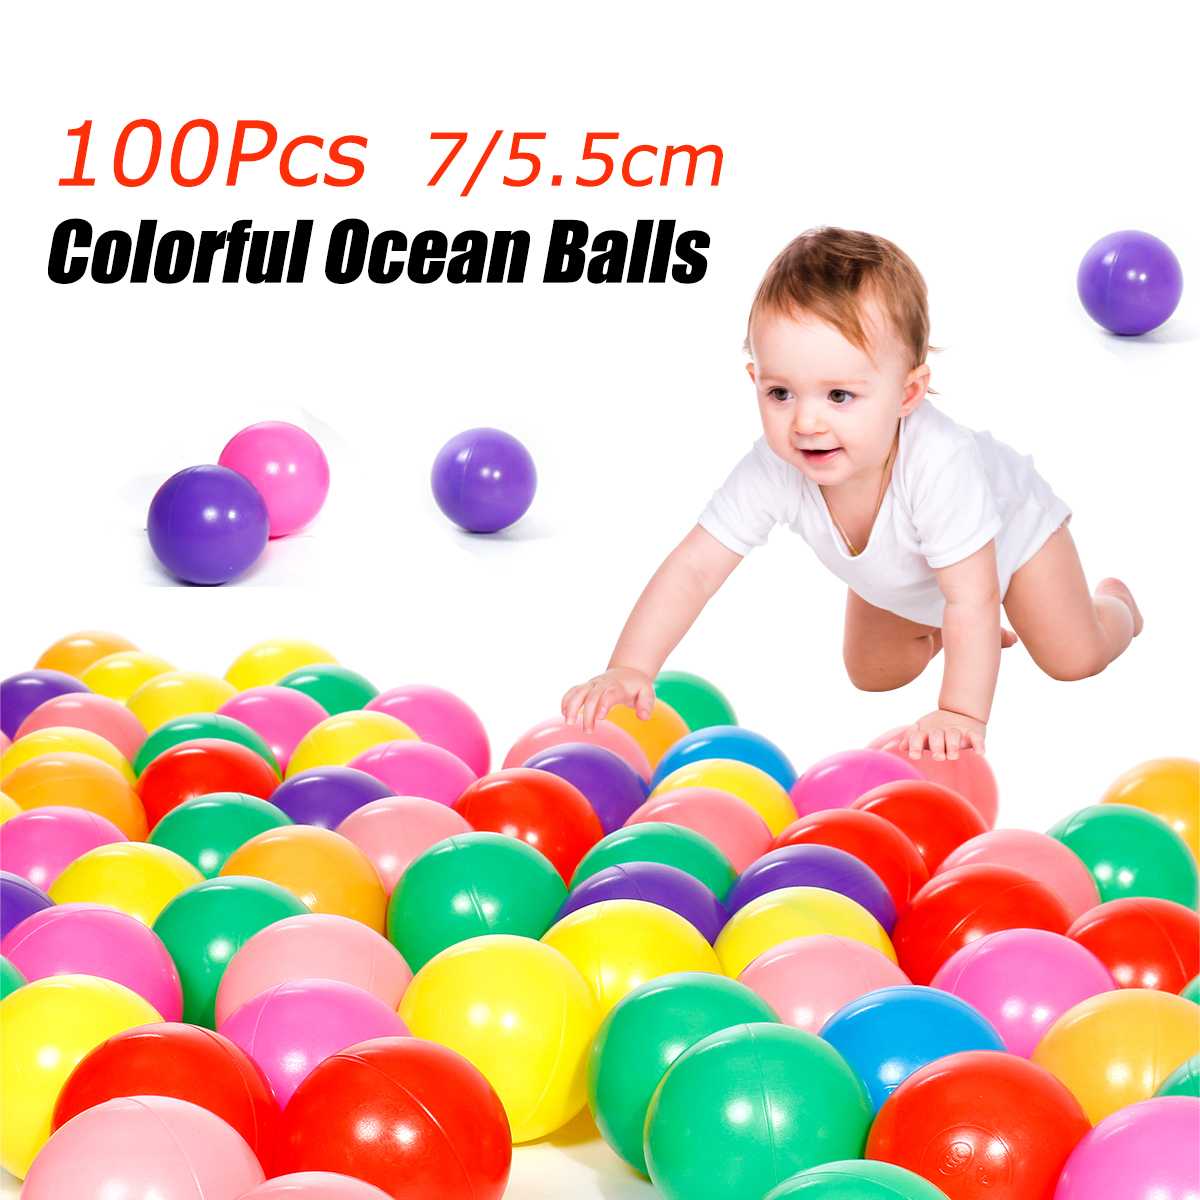 100 Stks/partij 7 Cm Ballen Zwembad Ballen Zacht Plastic Oceaan Bal Voor Kinderbox Kleurrijke Zachte Stress Air Jongleren Ballen Zintuiglijke baby Speelgoed